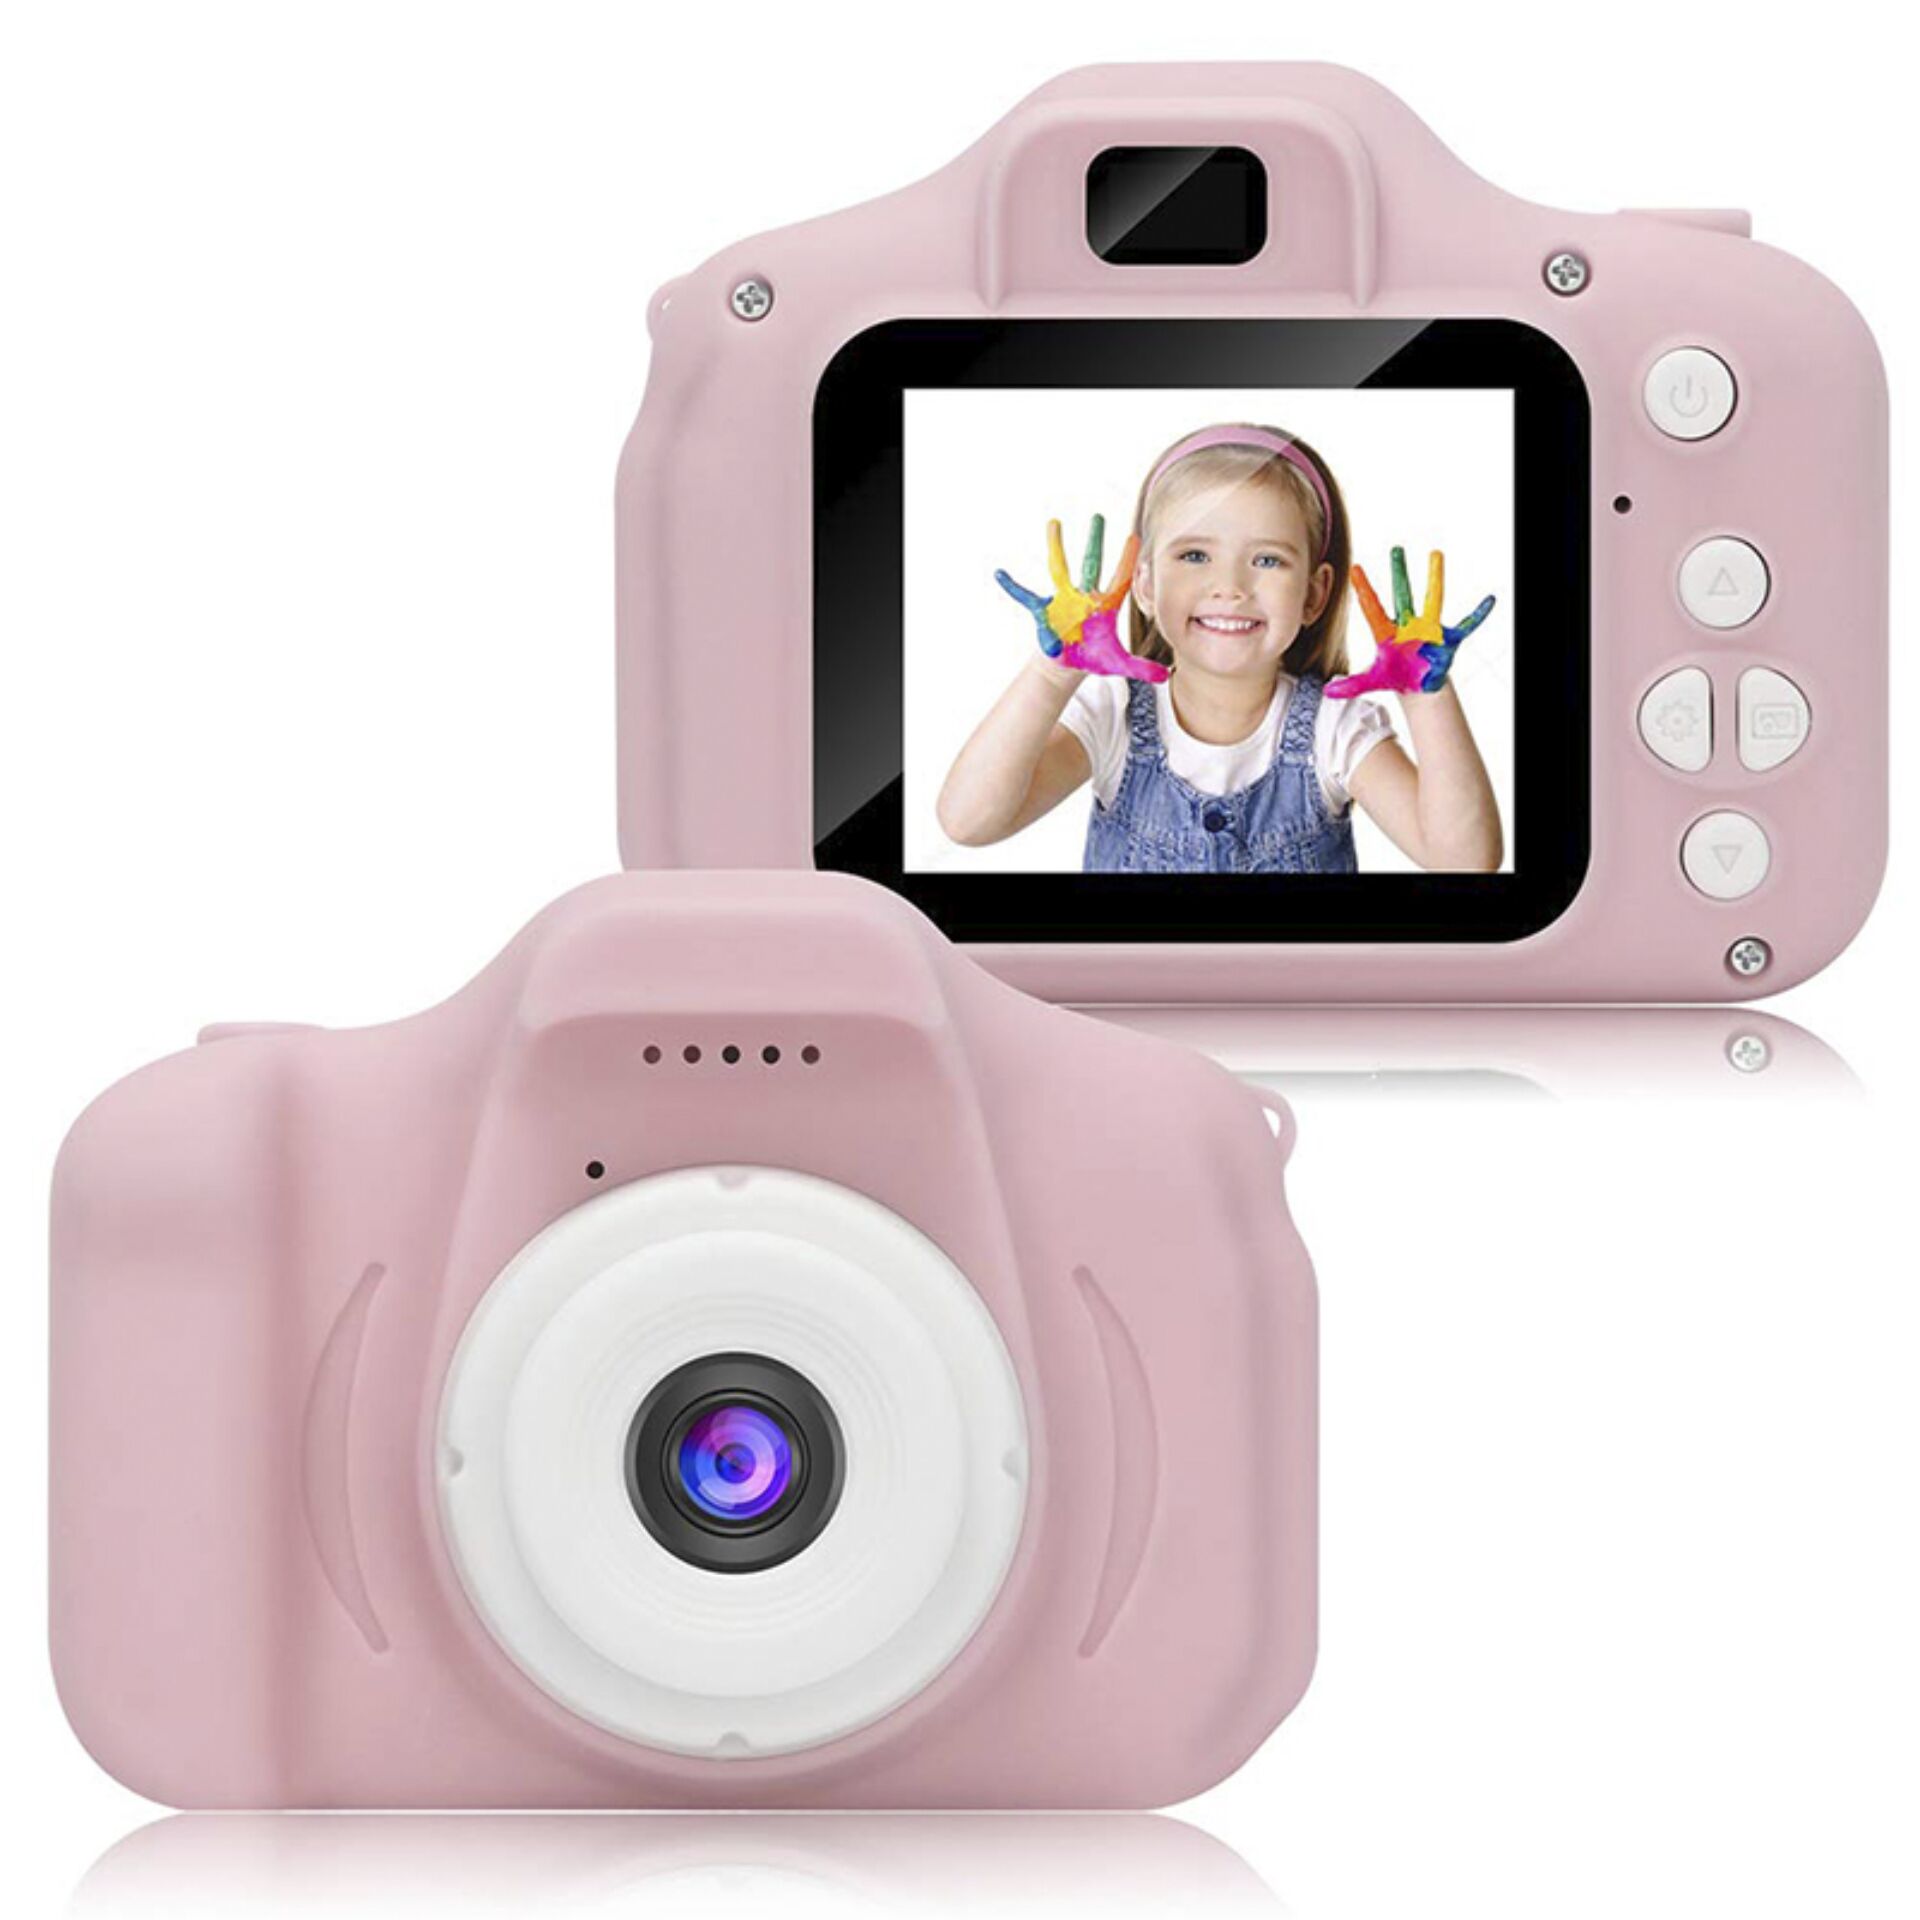 Denver KCA-1330 Kids camera pink